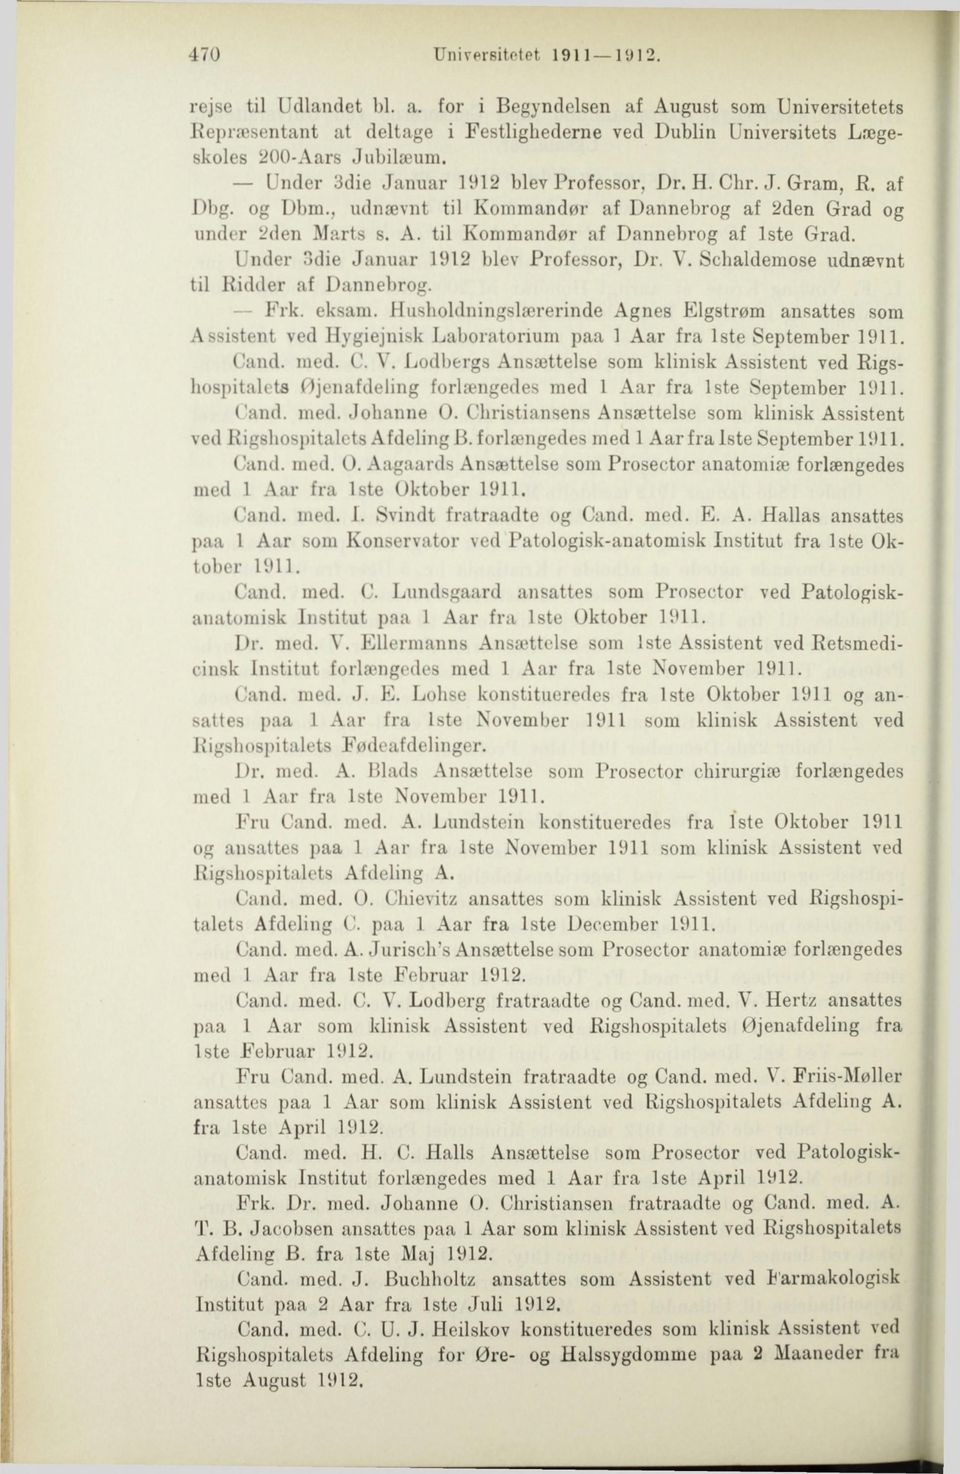 Under 3die Januar 1912 blev Professor, Dr. V. Schaldemose udnævnt til Ridder af Dannebrog. Frk. eksam.